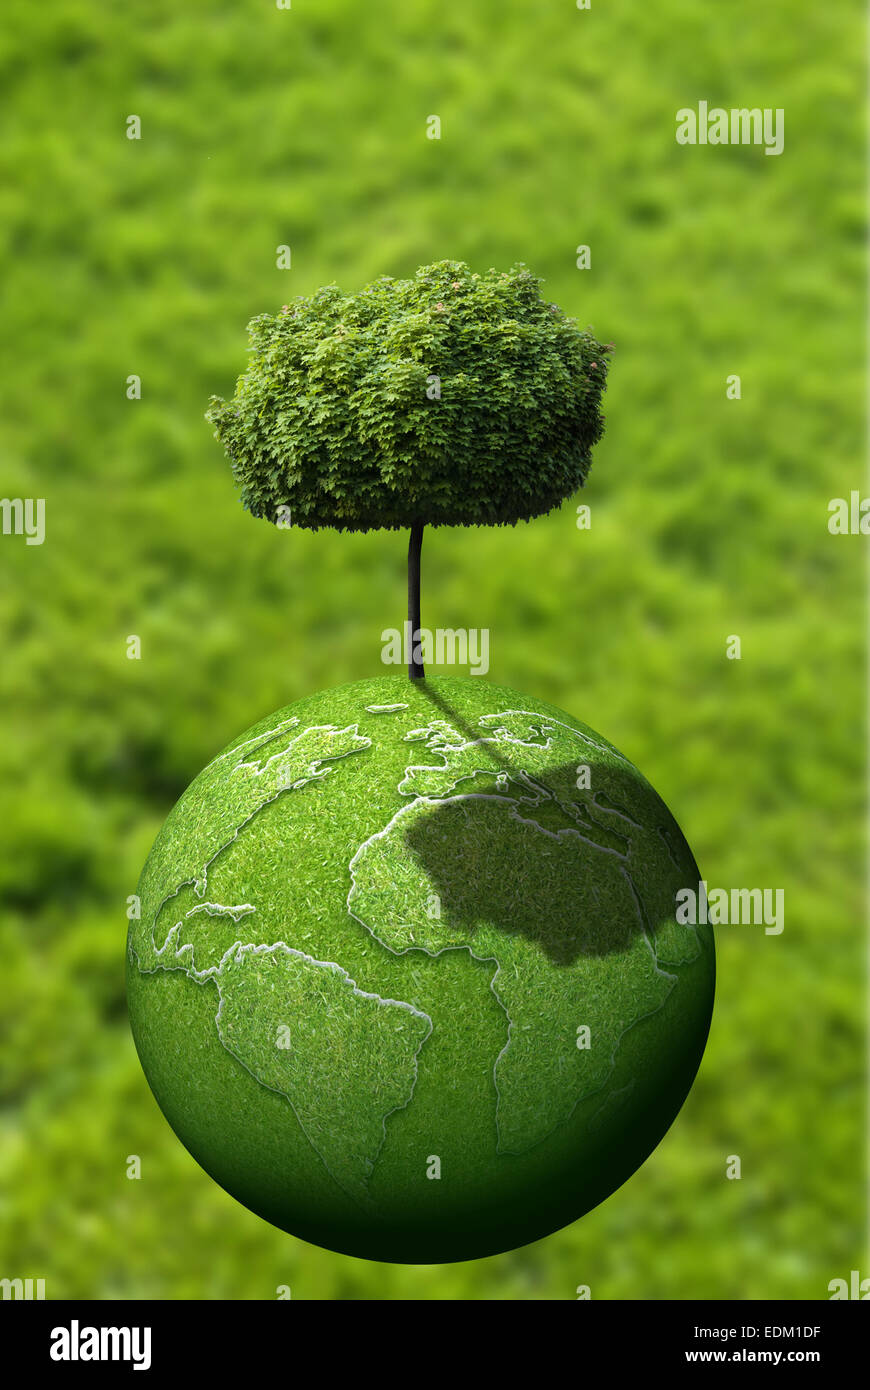 Grüner Baum auf dem grünen Planeten Erde Stockfoto